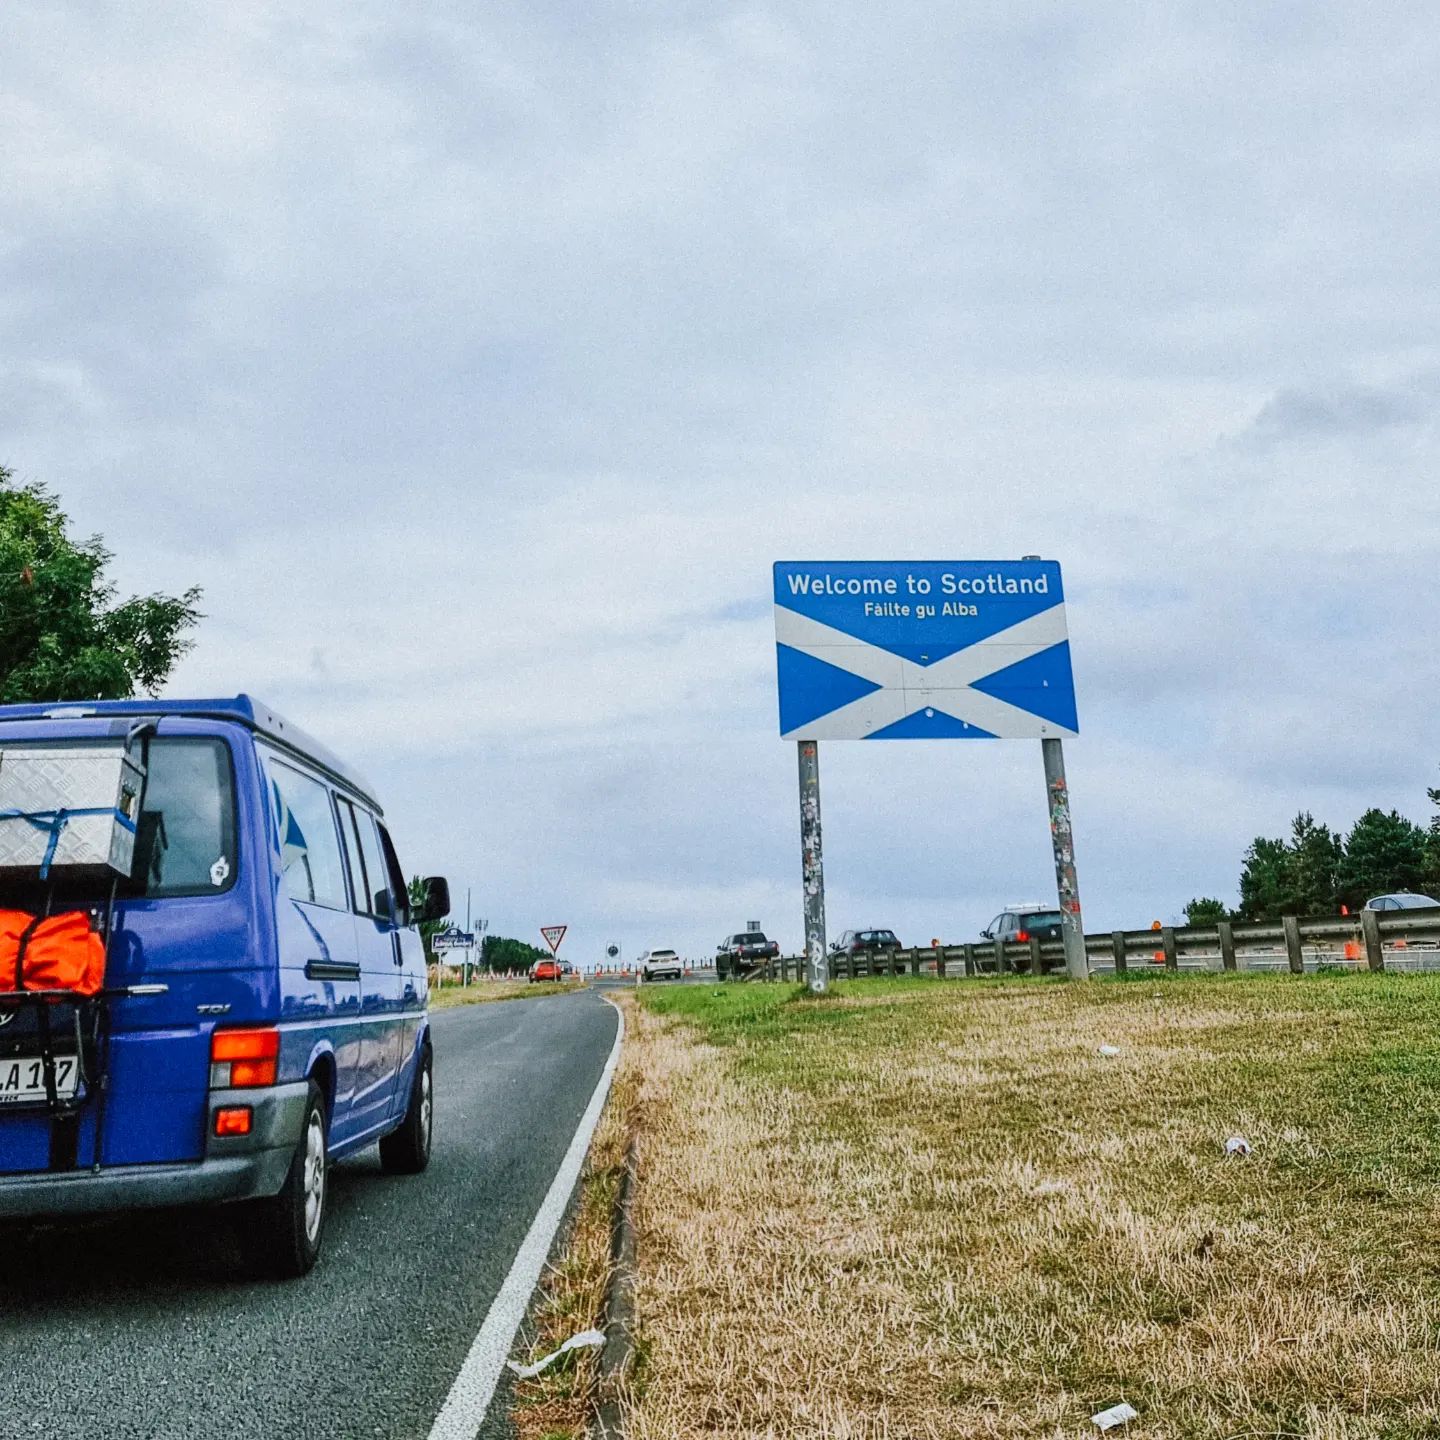 We made it to Scotland! 🏴󠁧󠁢󠁳󠁣󠁴󠁿

..und finden es jetzt schon richtig cool hier! Erst mal wird die Hauptstadt erkundet. 

Wer war schon in Edinburgh und wer möchte mal hin?
Tipps können hier auch noch in den Hut geworfen werden 😉
.
.
.
#bullikinder #bulli #t4 #t4camper #Camper #campervan #vanlove #homeiswhereyouparkit #schottland #schottlandreise #vanlifescotland #visitscotland #Edinburgh #reisemitkindern #reisenmitkind #Reiselust #roadtrip #familienreise #reiseblog #familyblog #reiseblogger #travelventure #travelgram #unterwegsmitkindern #draussenzuhause